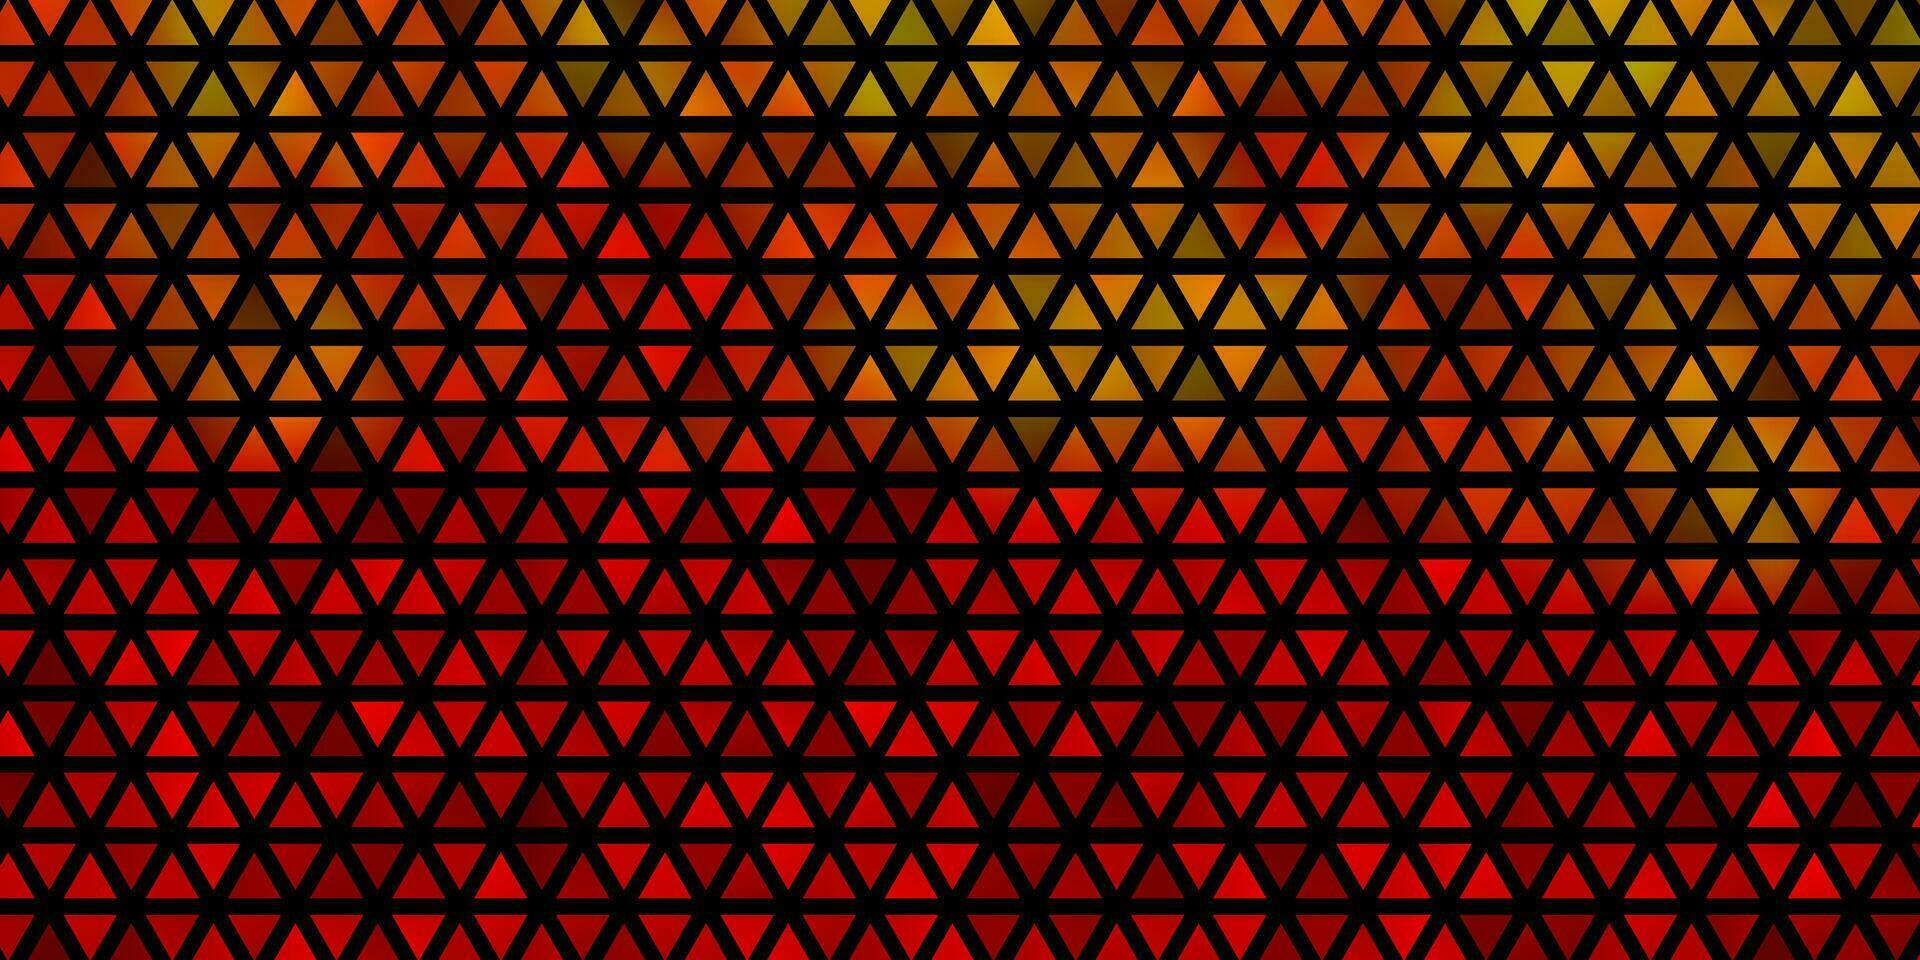 ljus orange vektor bakgrund med linjer, trianglar.